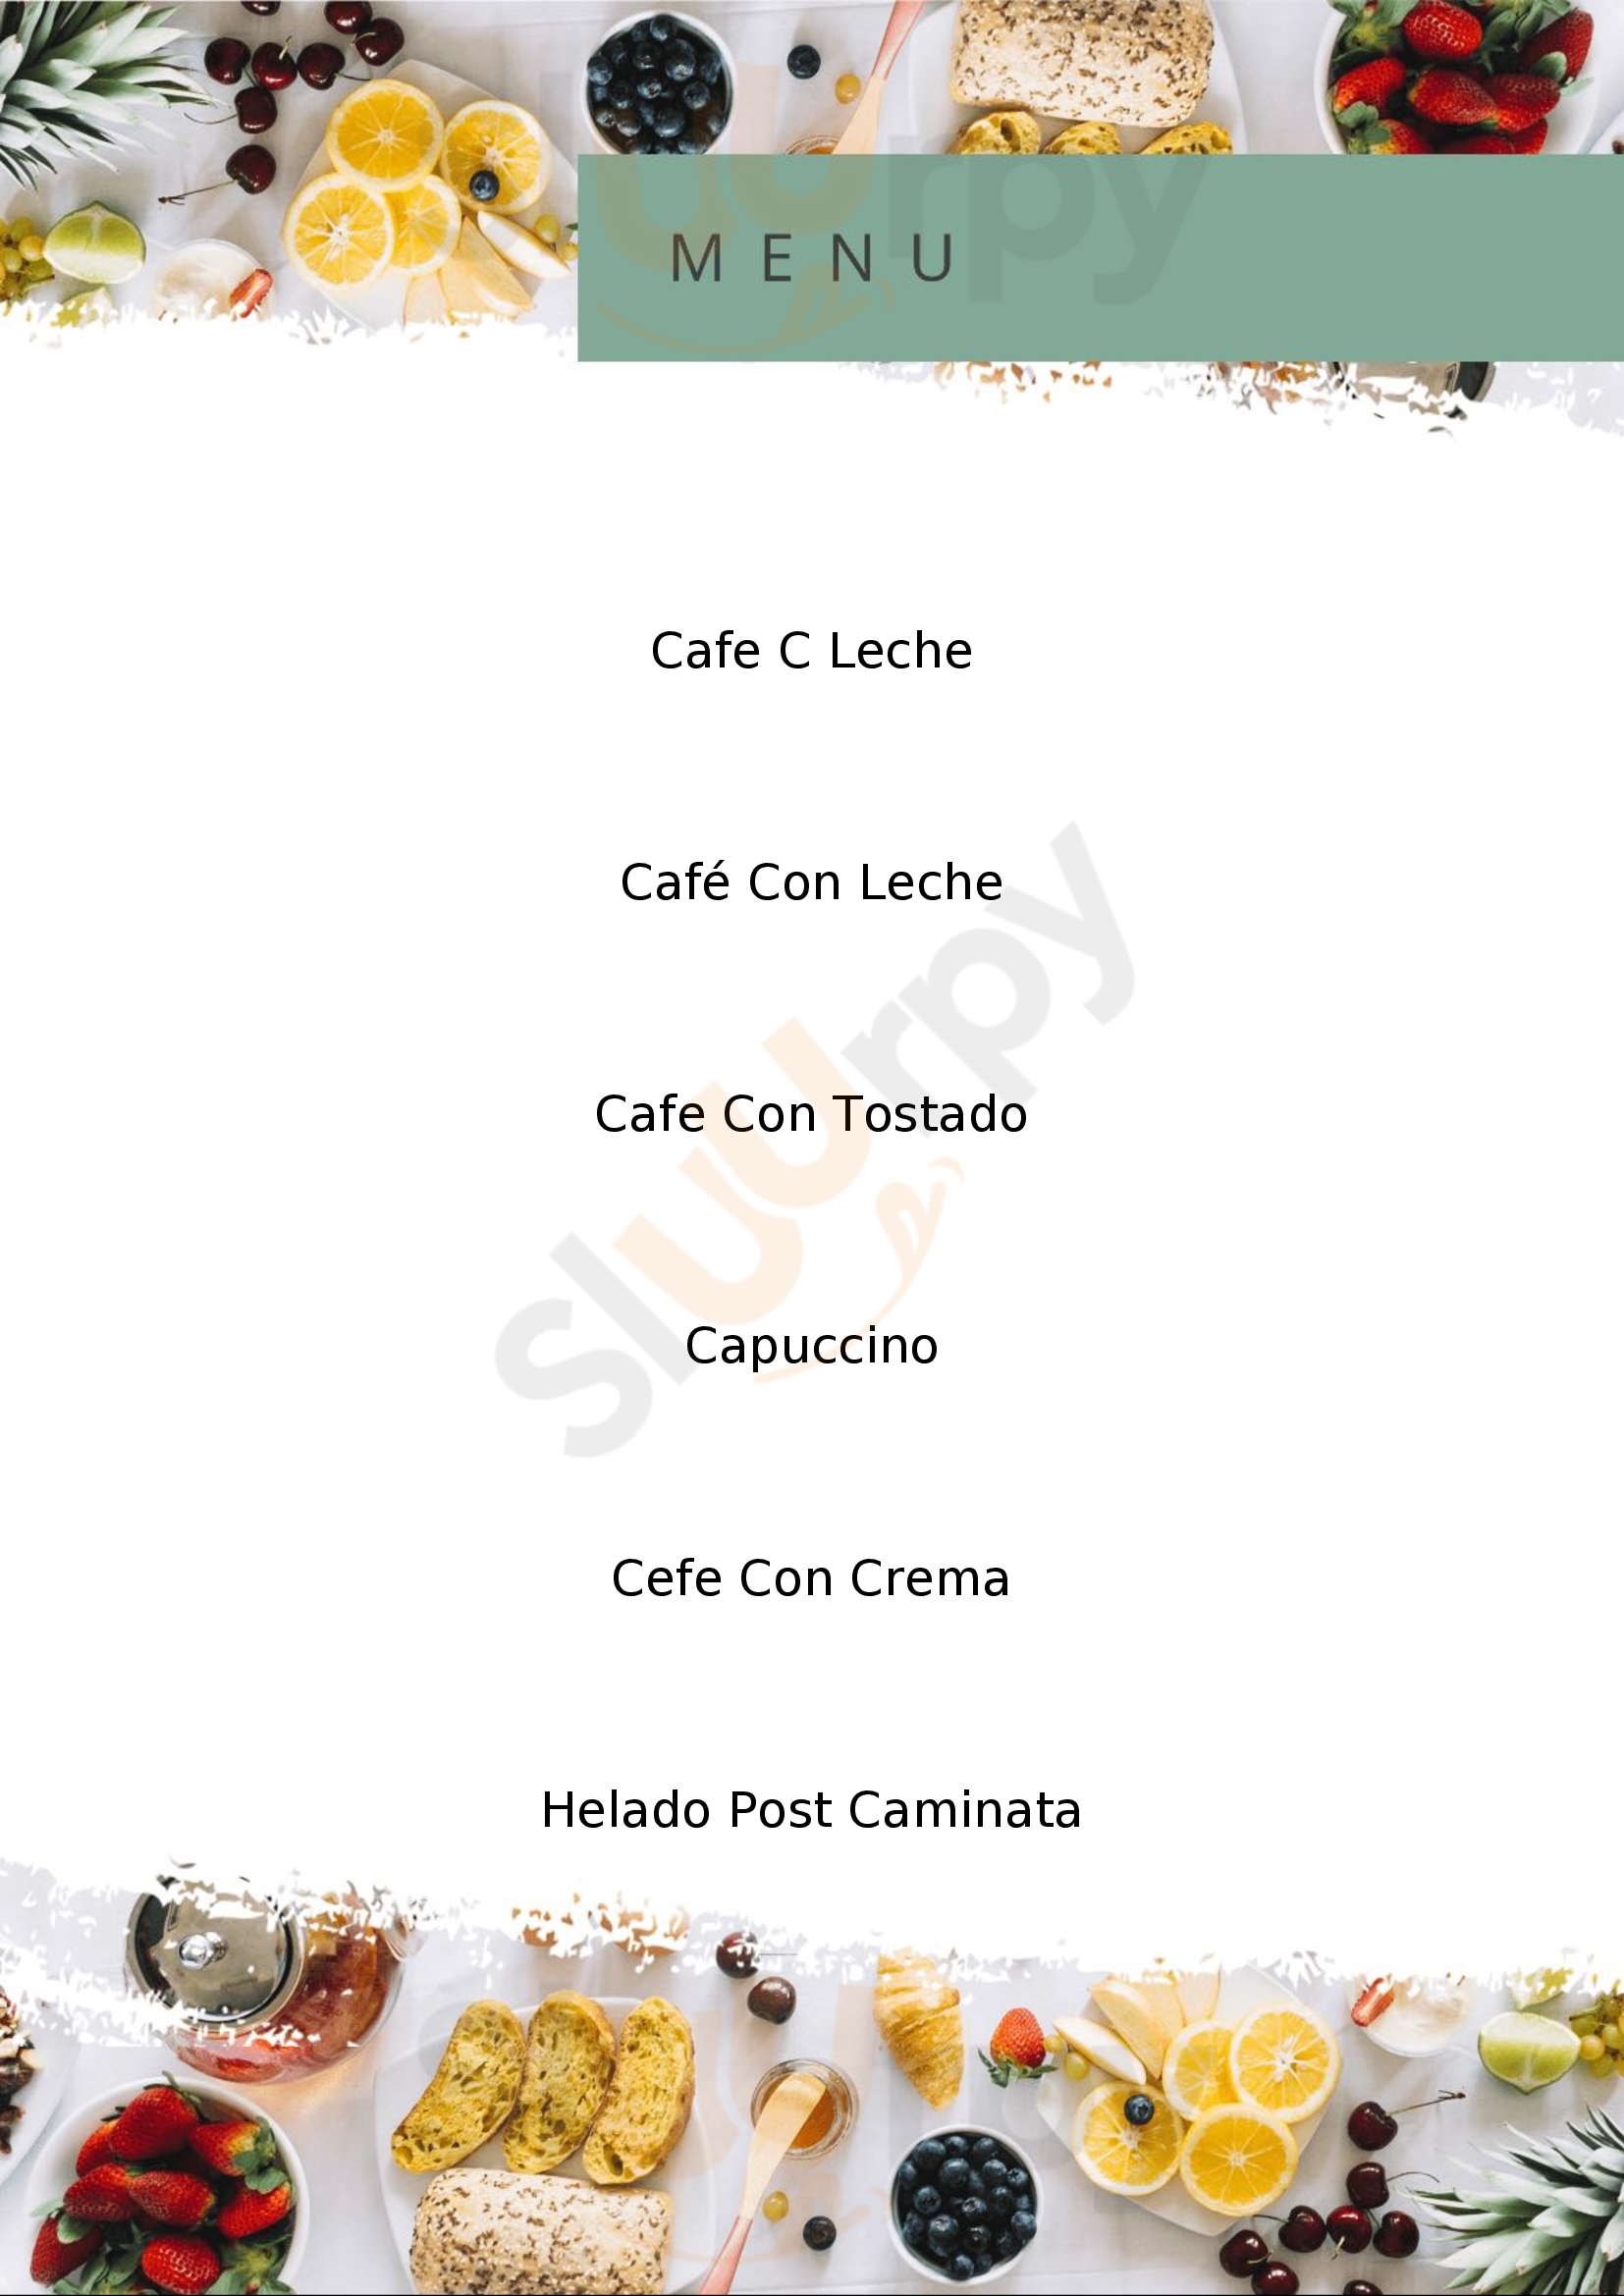 Colonial - Helados & Cafe Olivos Menu - 1